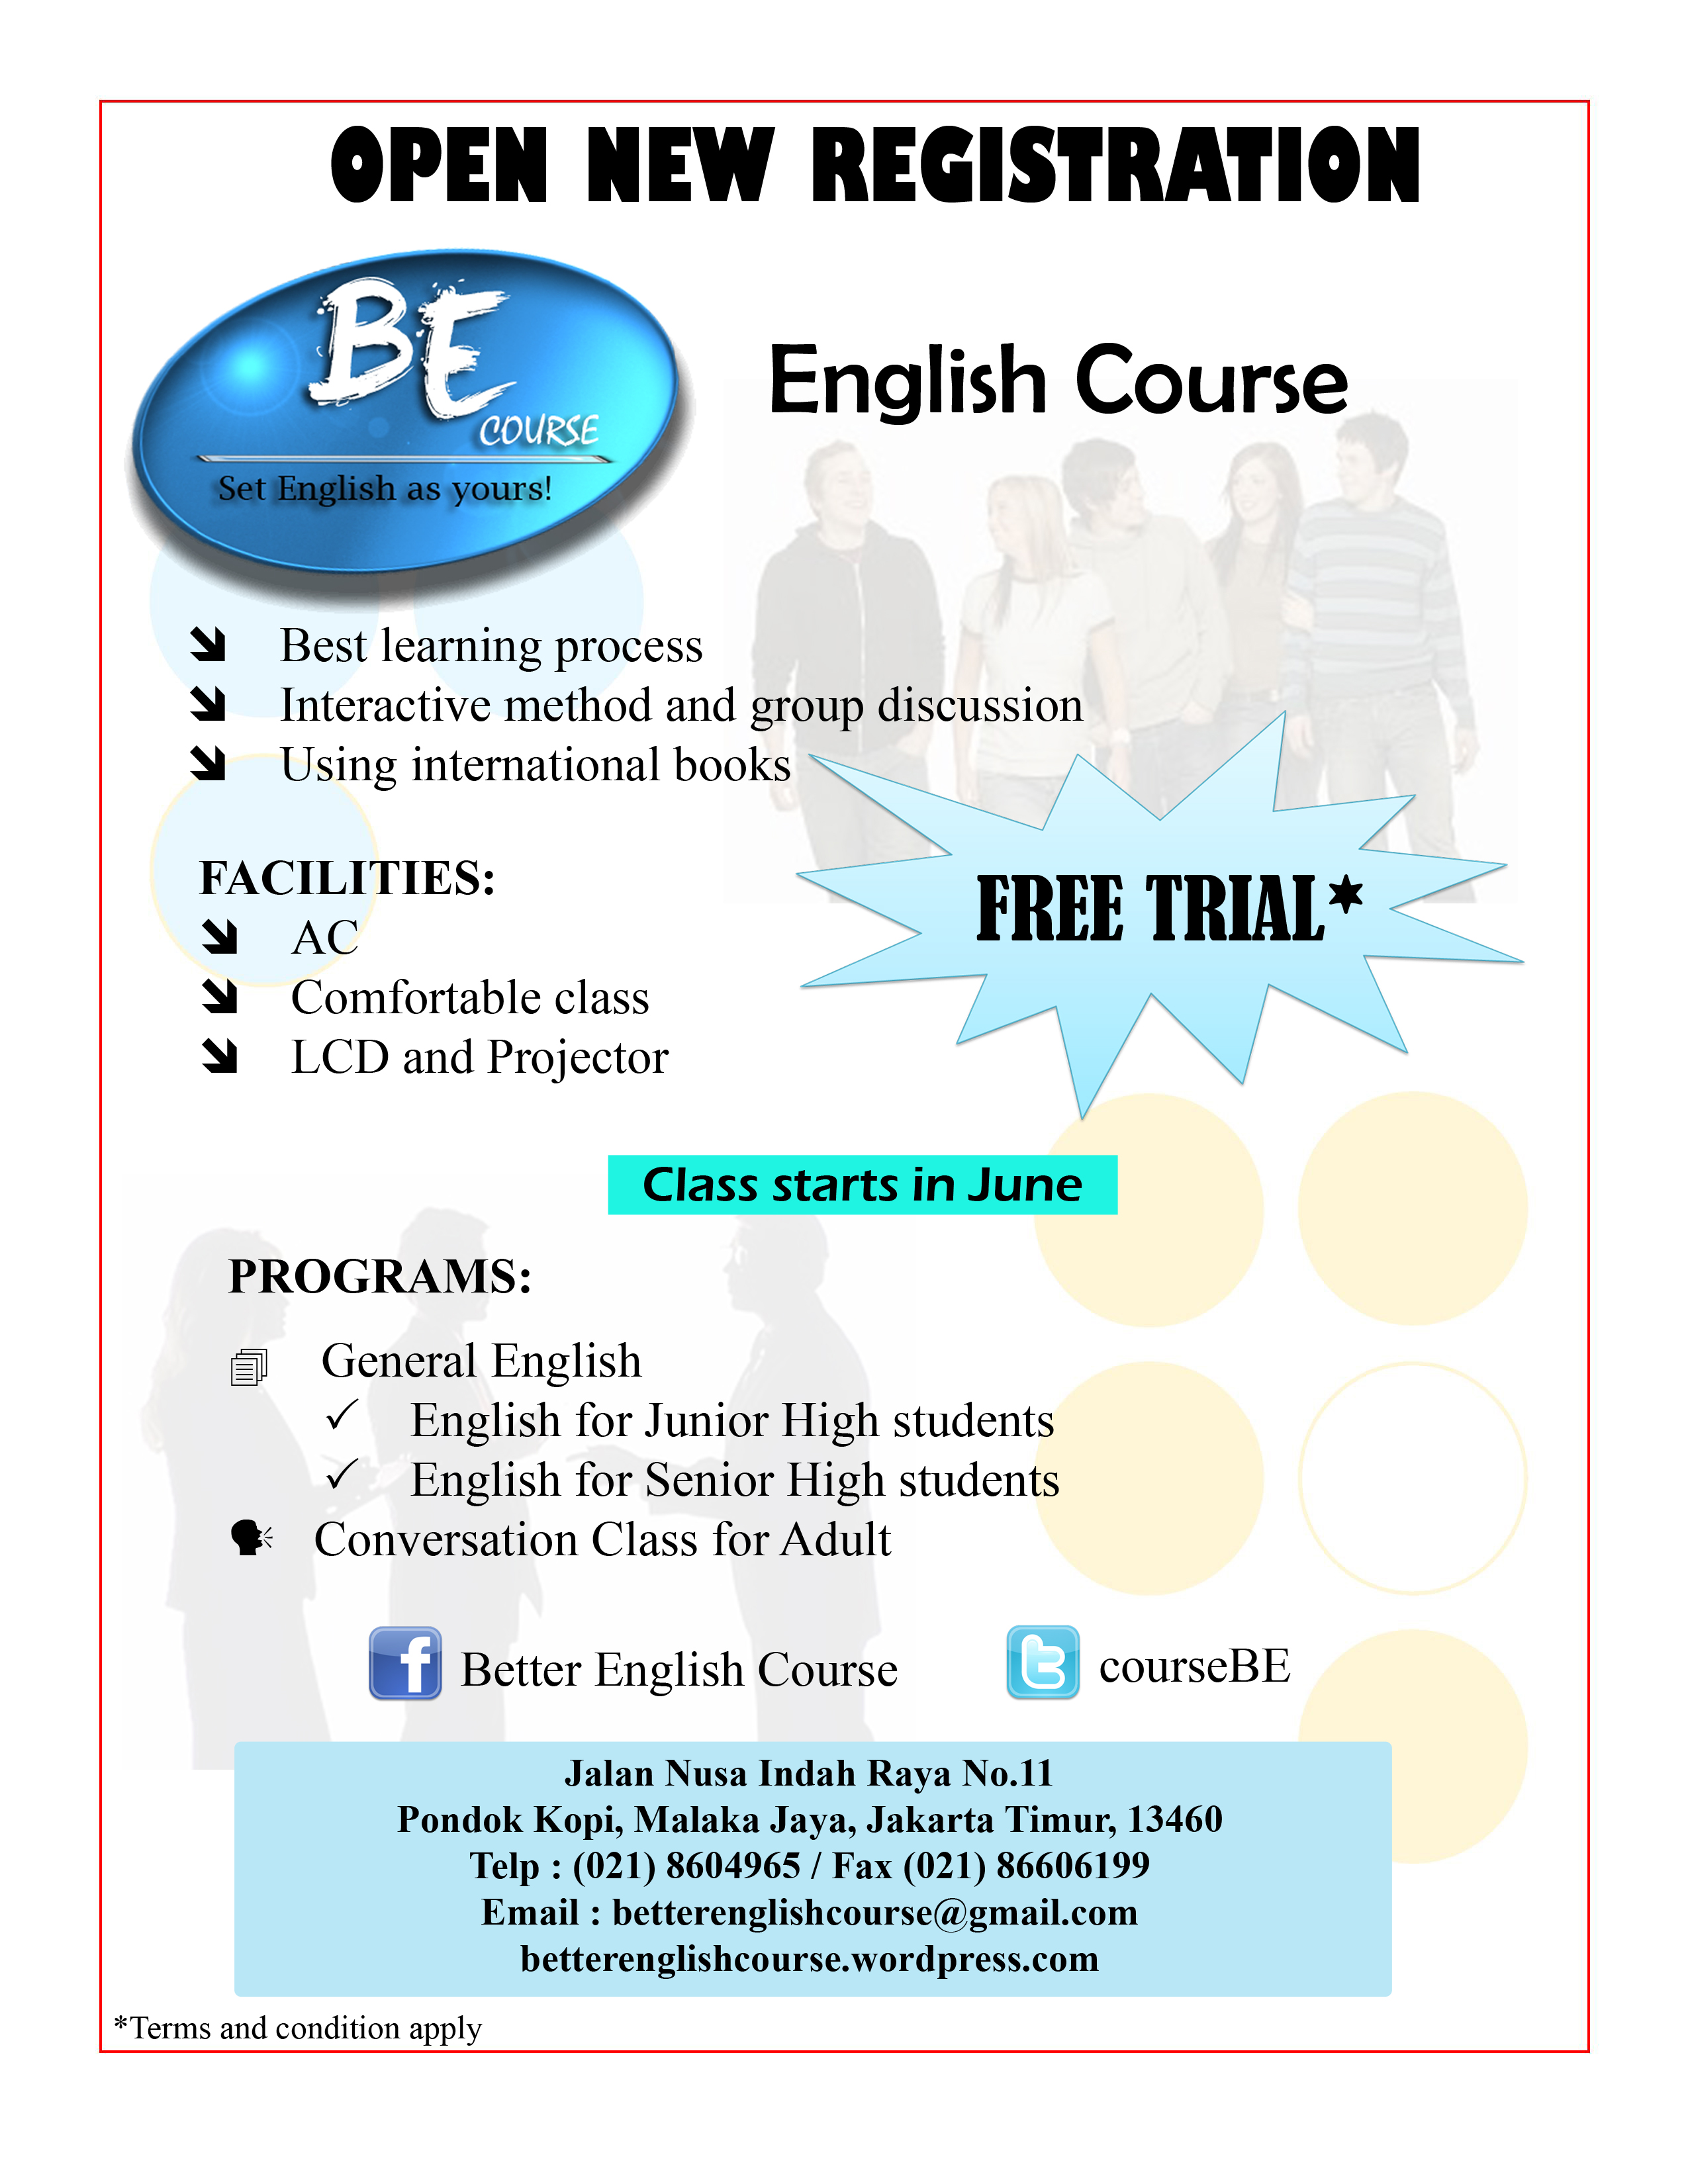 Better English Course telah membuka pendaftaran bagi siswa baru yang akan mengikuti kursus bahasa Inggris Pendaftaran dibuka mulai 1 Mei – 31 Mei 2012